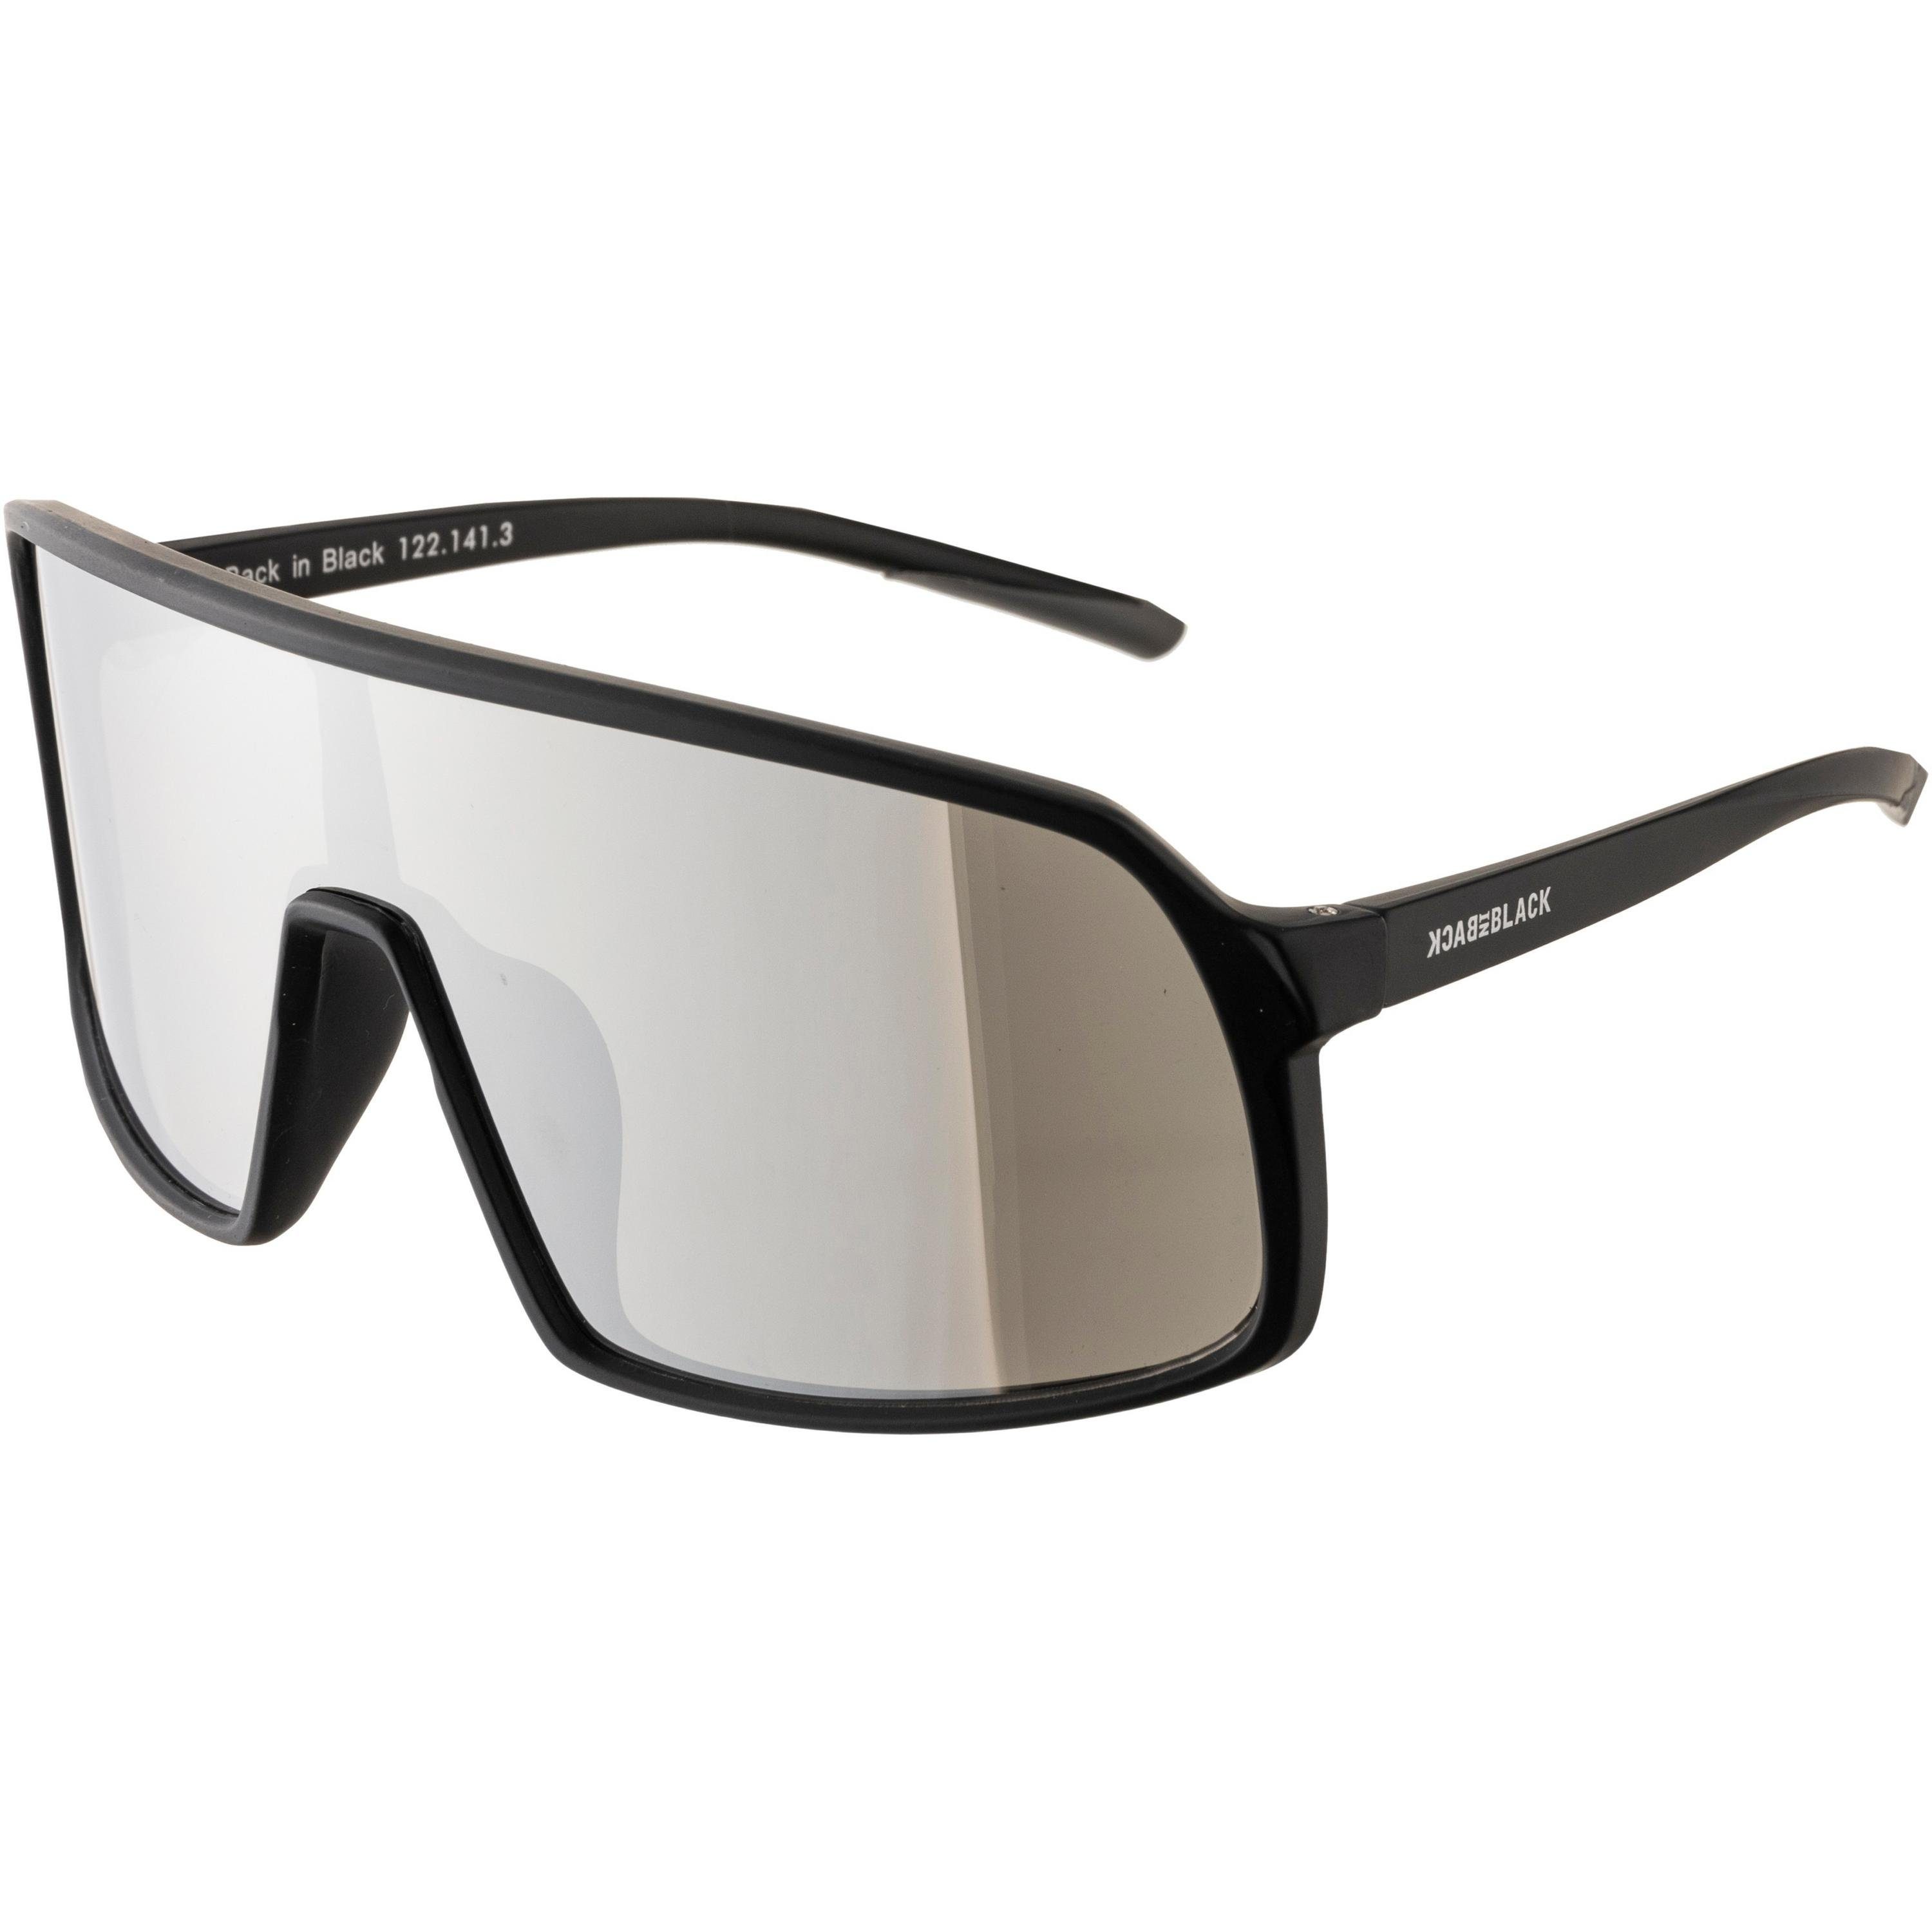 BACK IN BLACK Eyewear Sonnenbrille große Gläser, Verspiegelte Monoscheibe | Sonnenbrillen